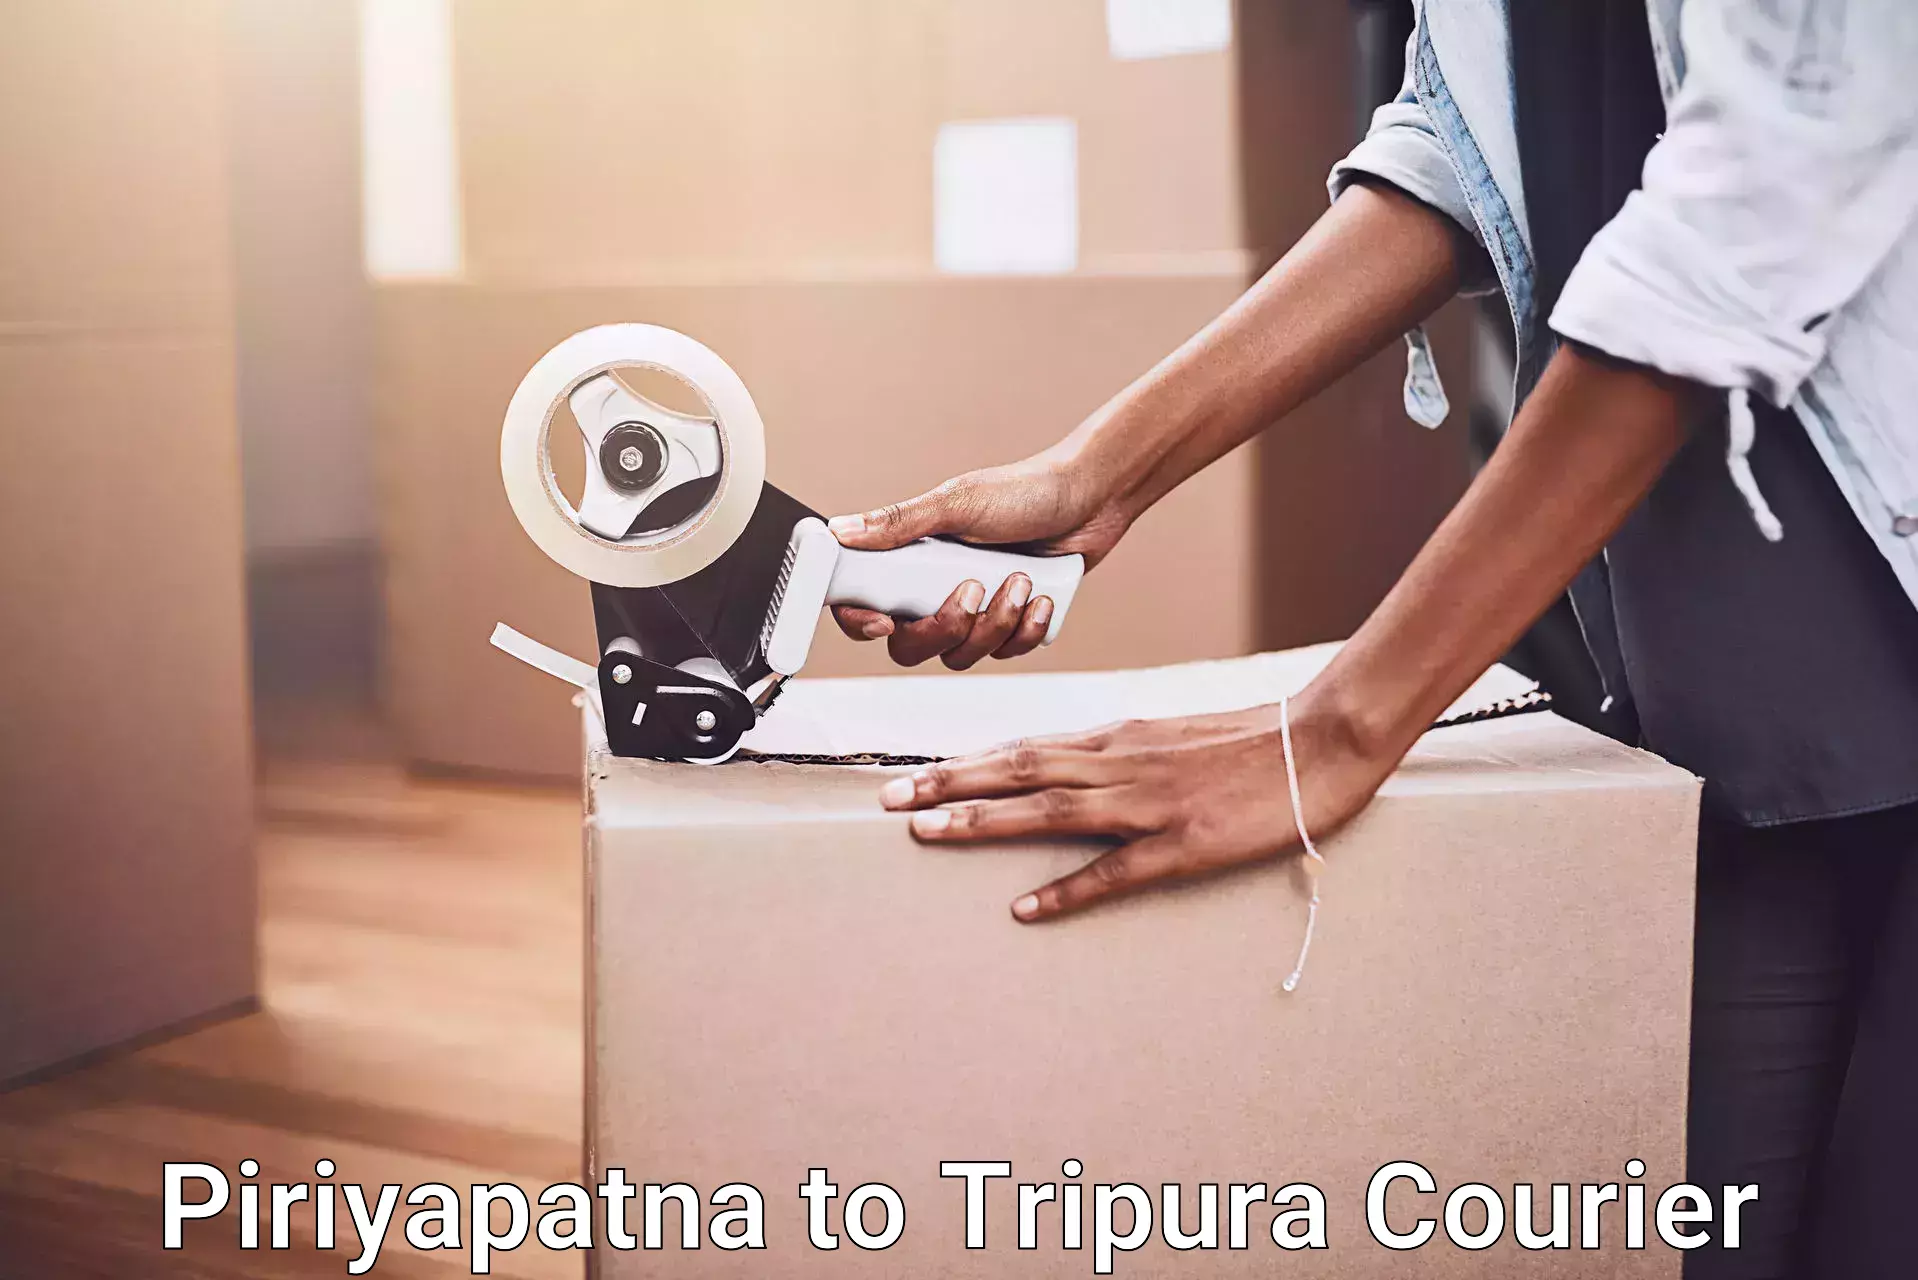 Furniture moving service Piriyapatna to Tripura